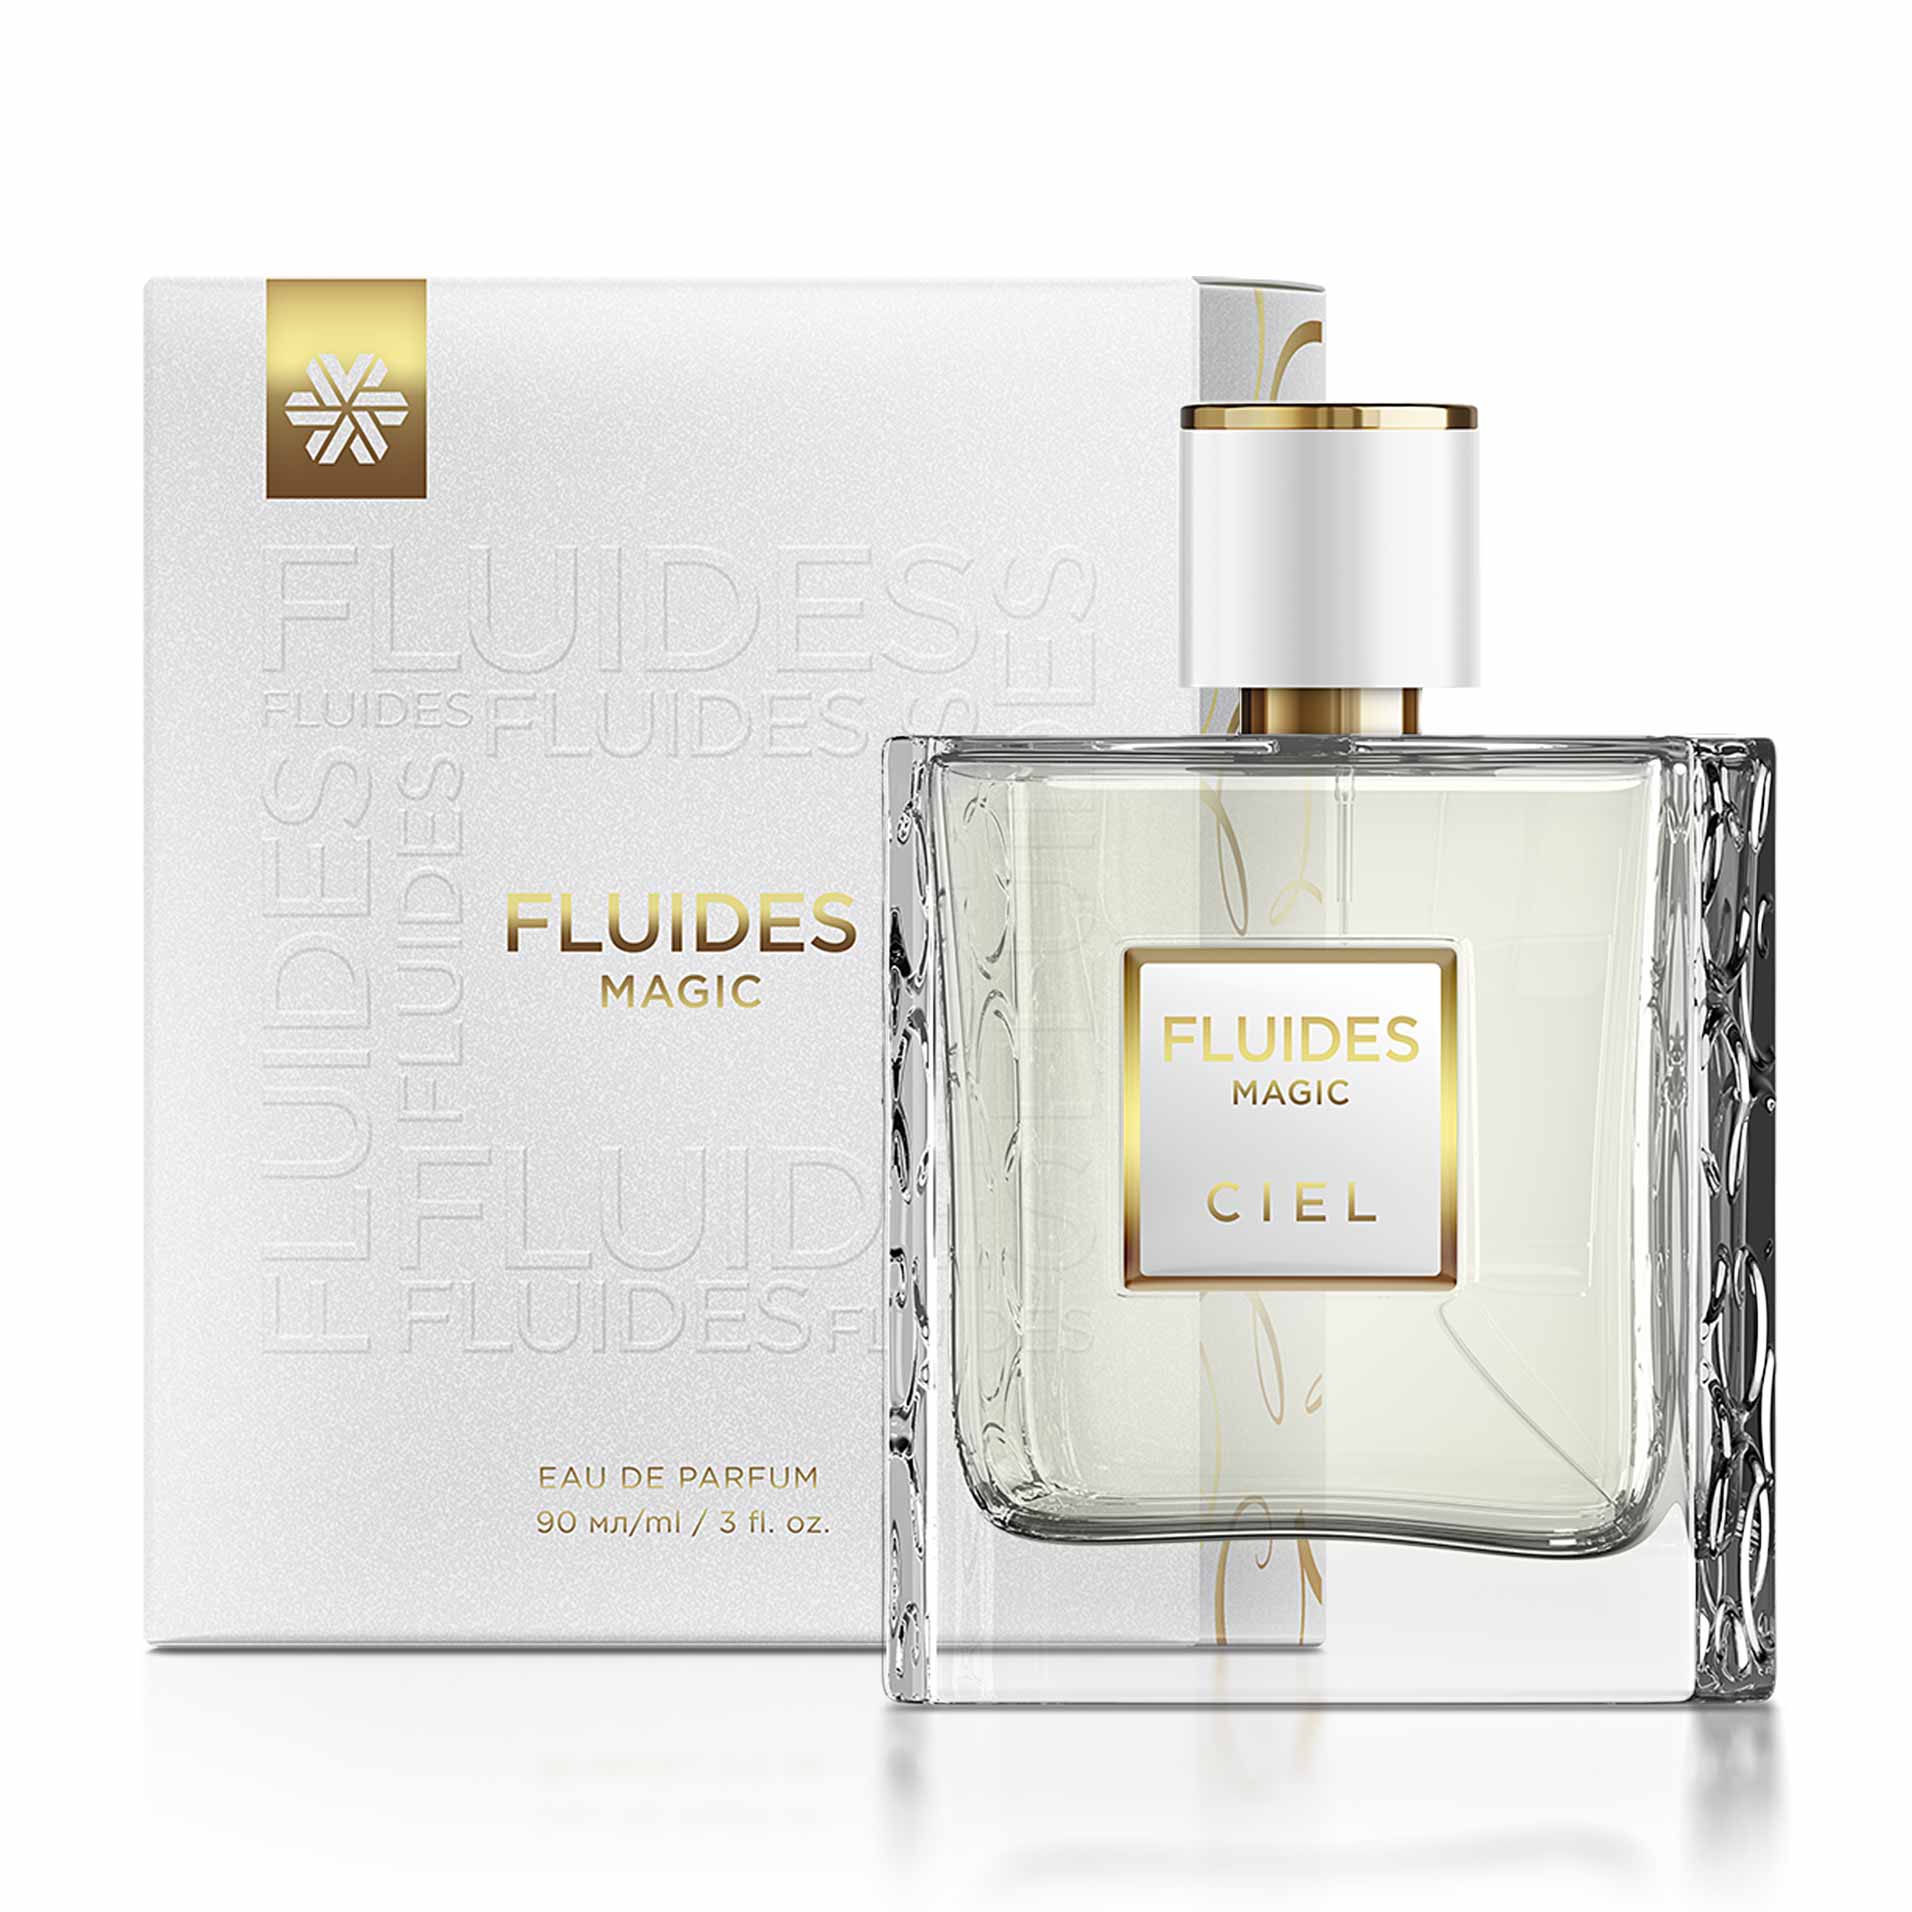 Изображение отсутствует.
			Купить FLUIDES Magic, парфюмерная вода - Коллекция ароматов Ciel //  // 